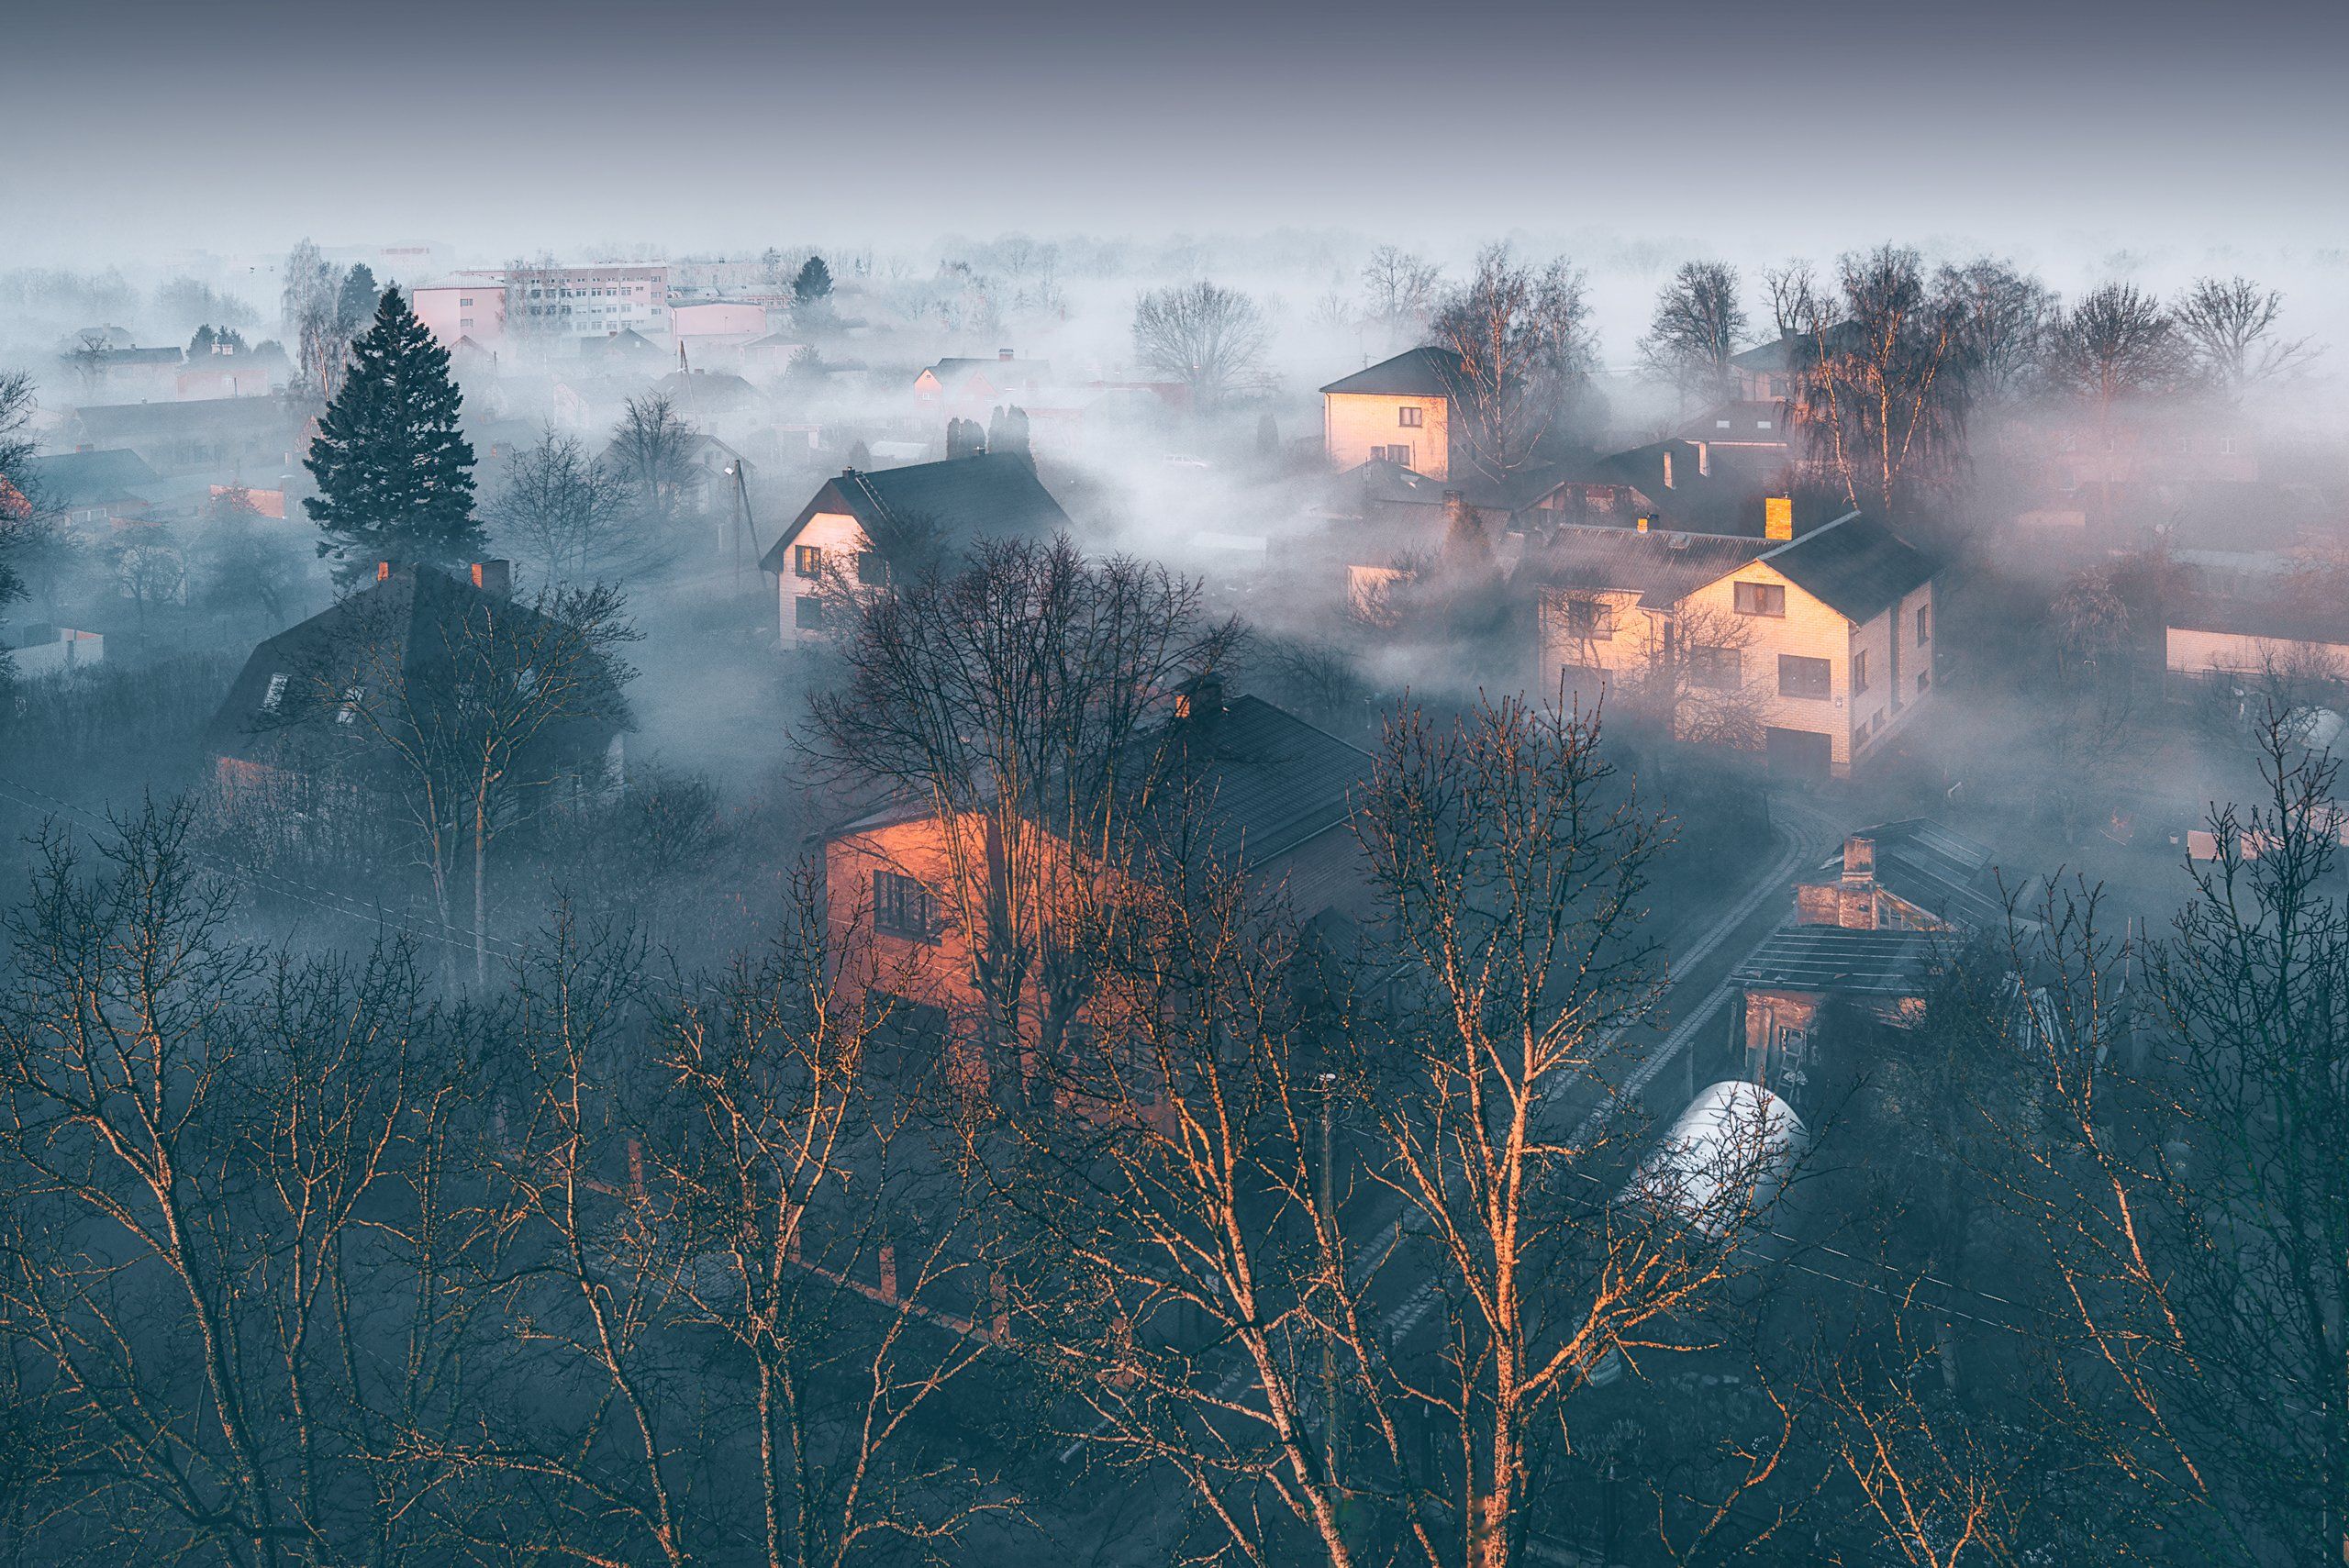 fog#landscape#туман#пейзаж#latvia#jelgava#утро, Olegs Bucis